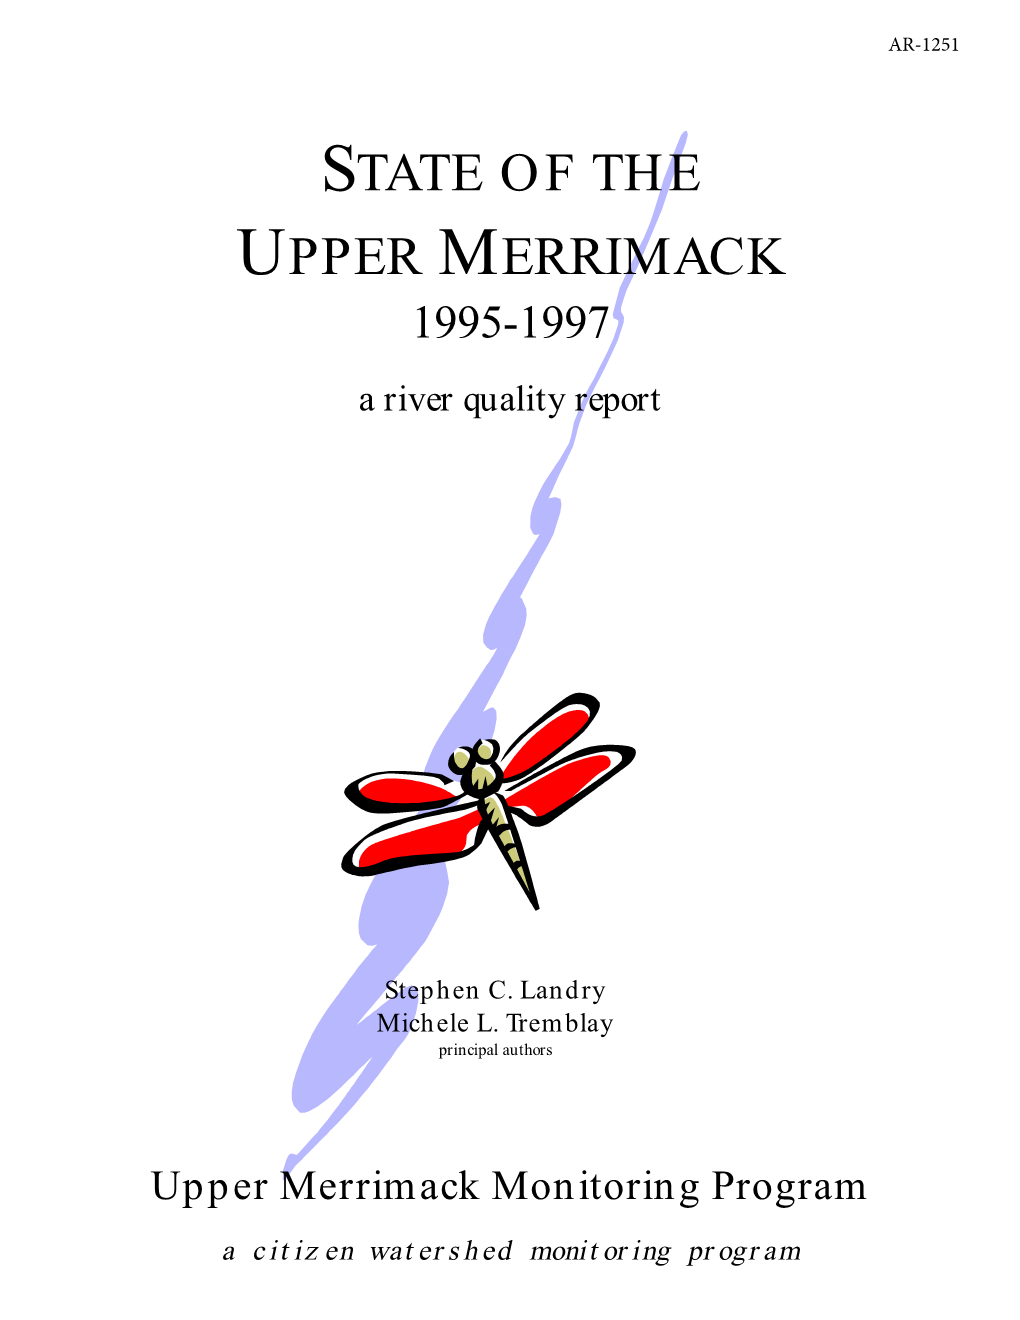 State of the Upper Merrimack River 1995-1997, Upper Merrimack River